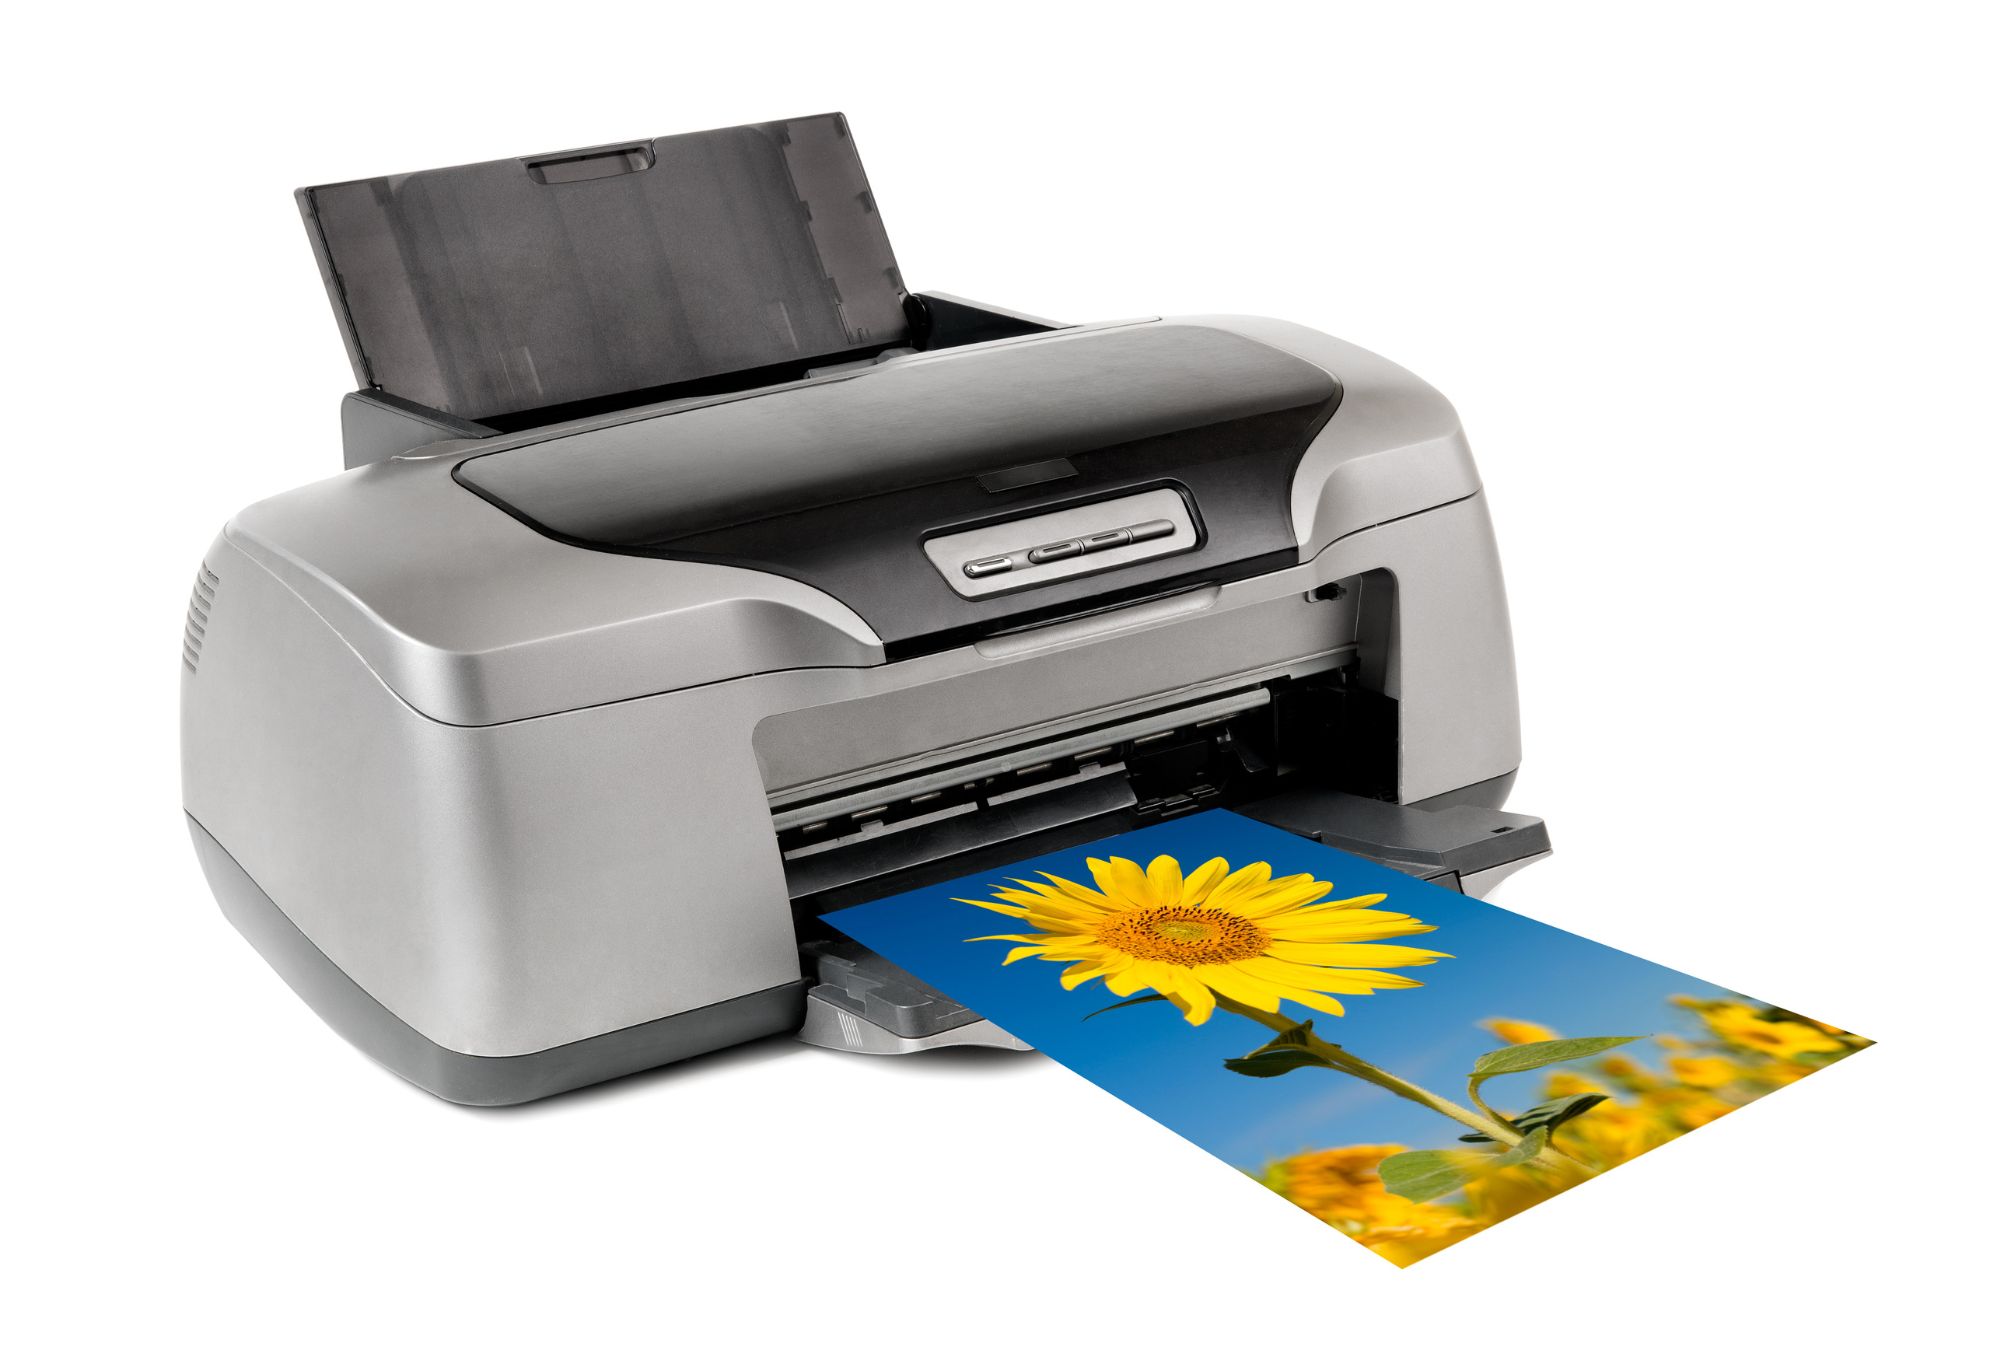 How do inkjet printers work?